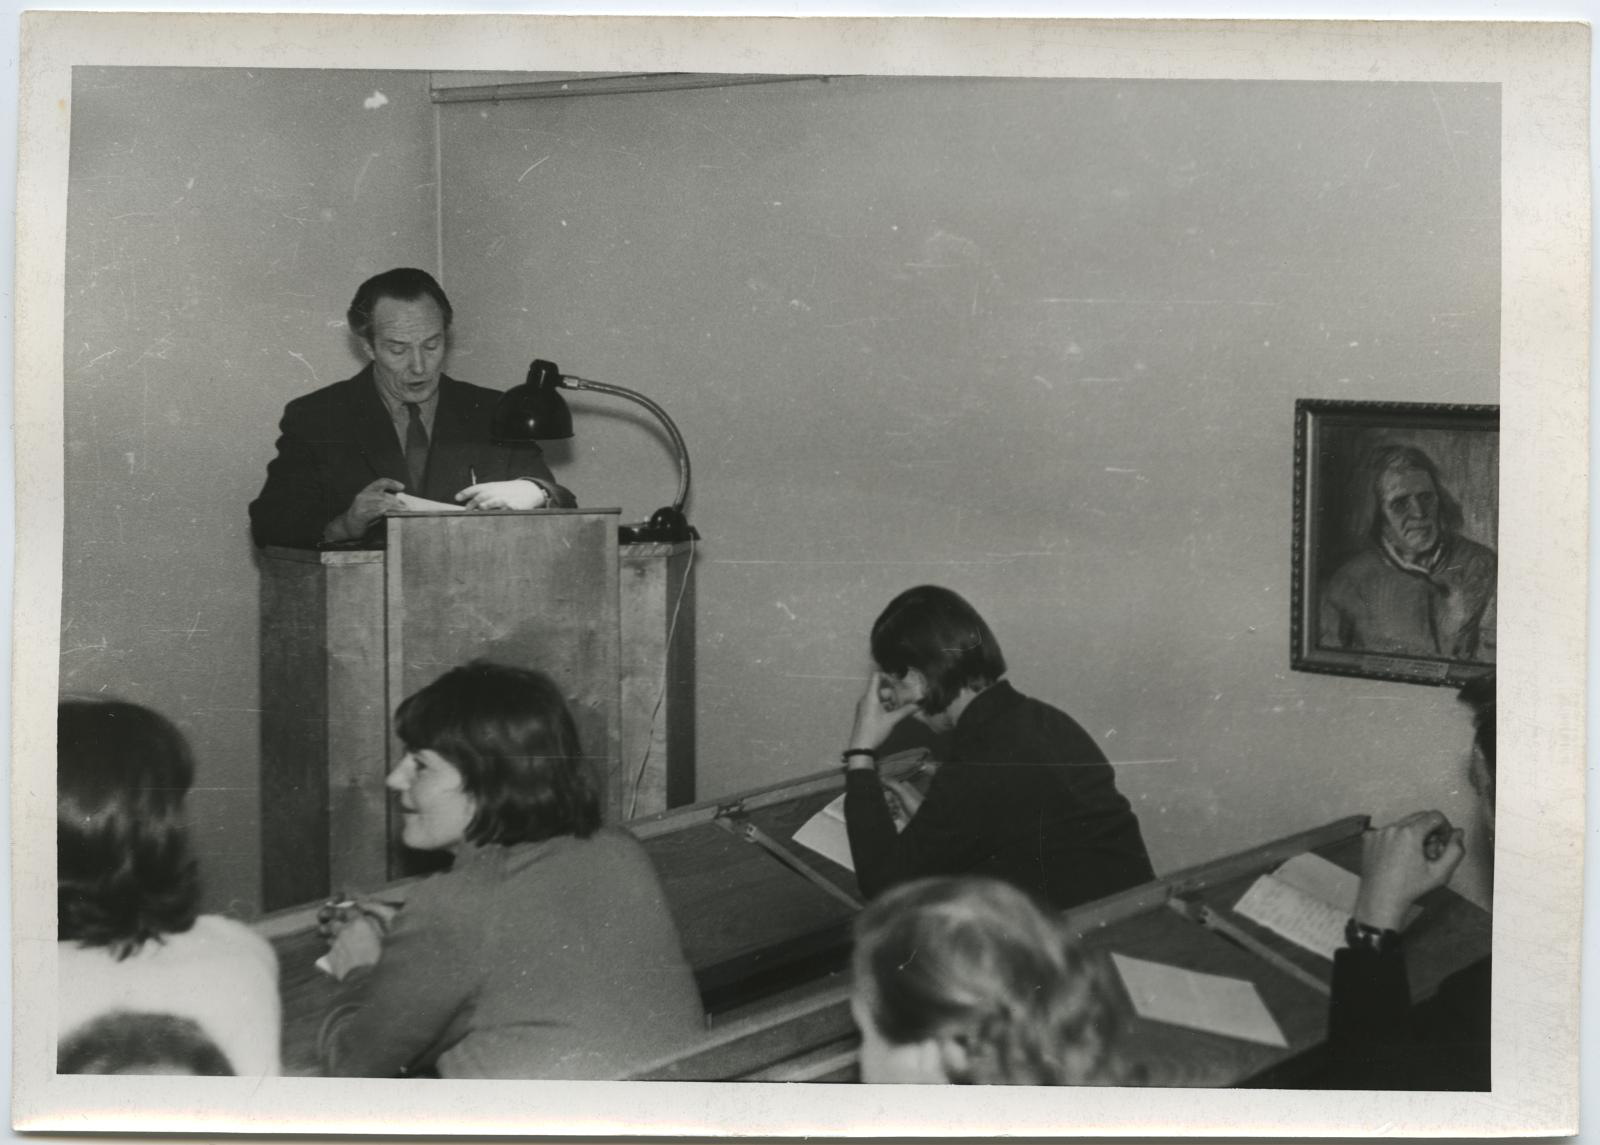 Talvise seminari avamine lektooriumis 13. jaan. 1969. Kursuse juhataja Eduard Maaser.